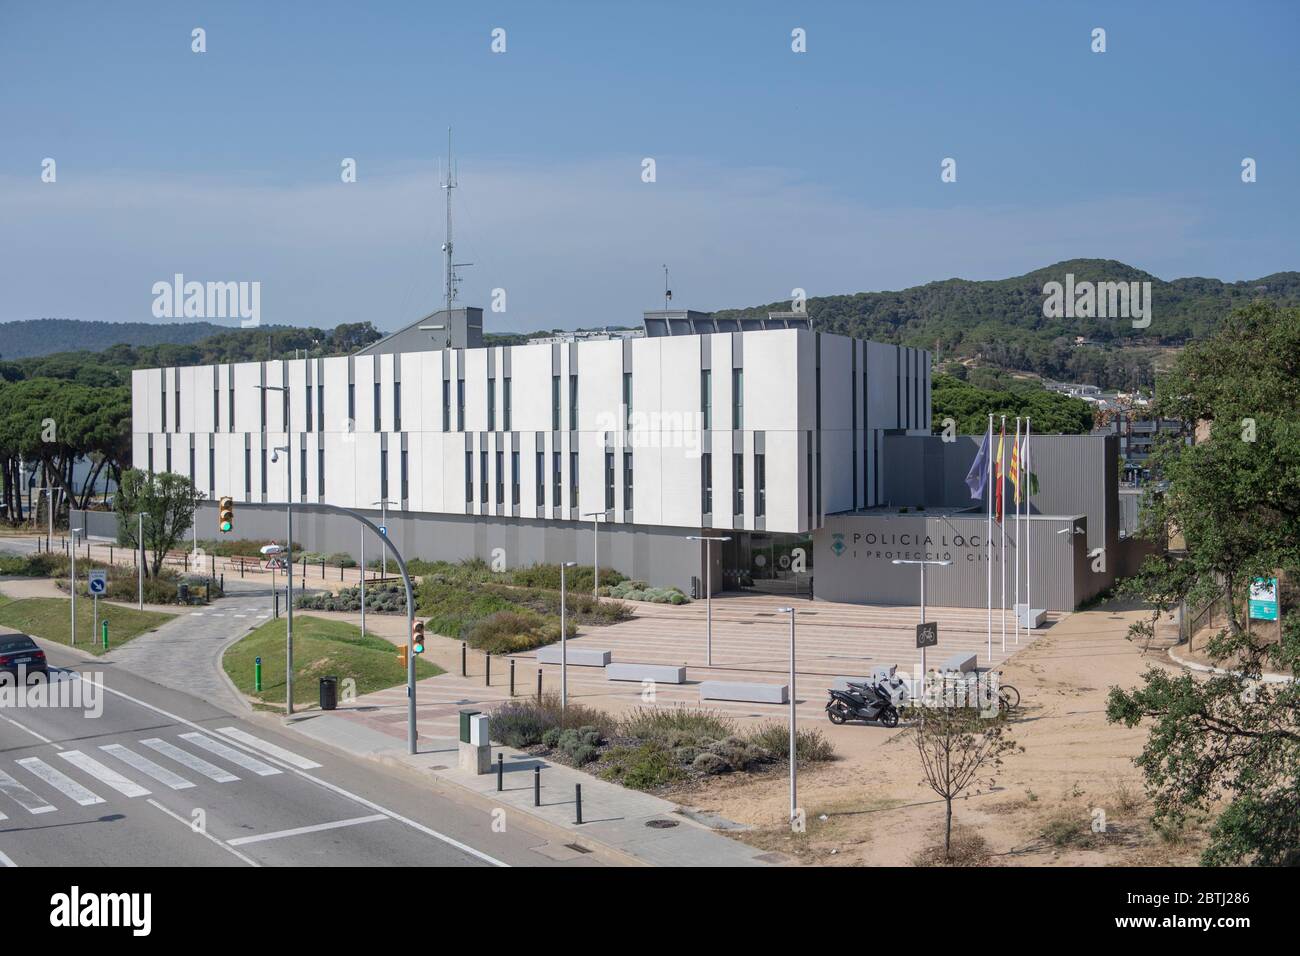 General views of the new local police station (Policia Local I Proteccio Civil)  in Lloret de Mar, Costa Brava, Spain Stock Photo